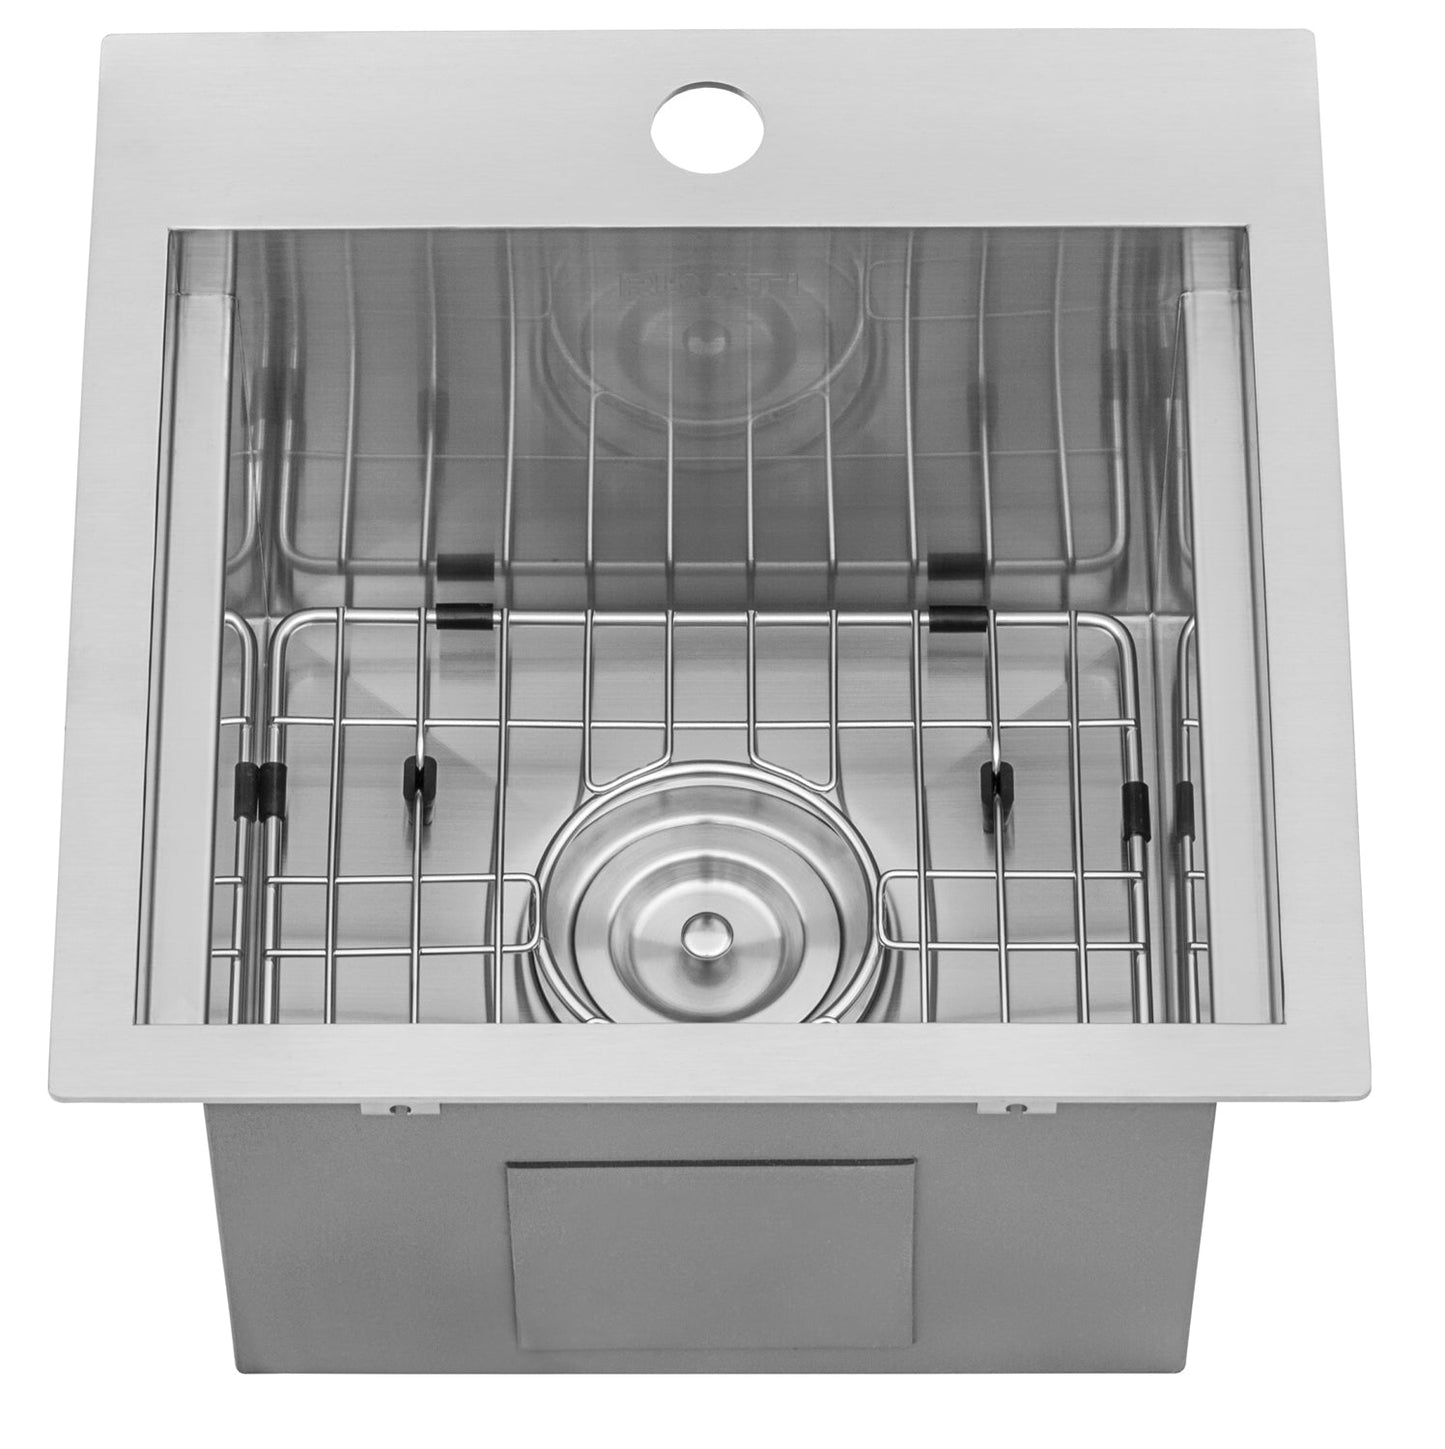 Ruvati Merino 15" x 15" Stainless Steel Topmount Workstation Sink